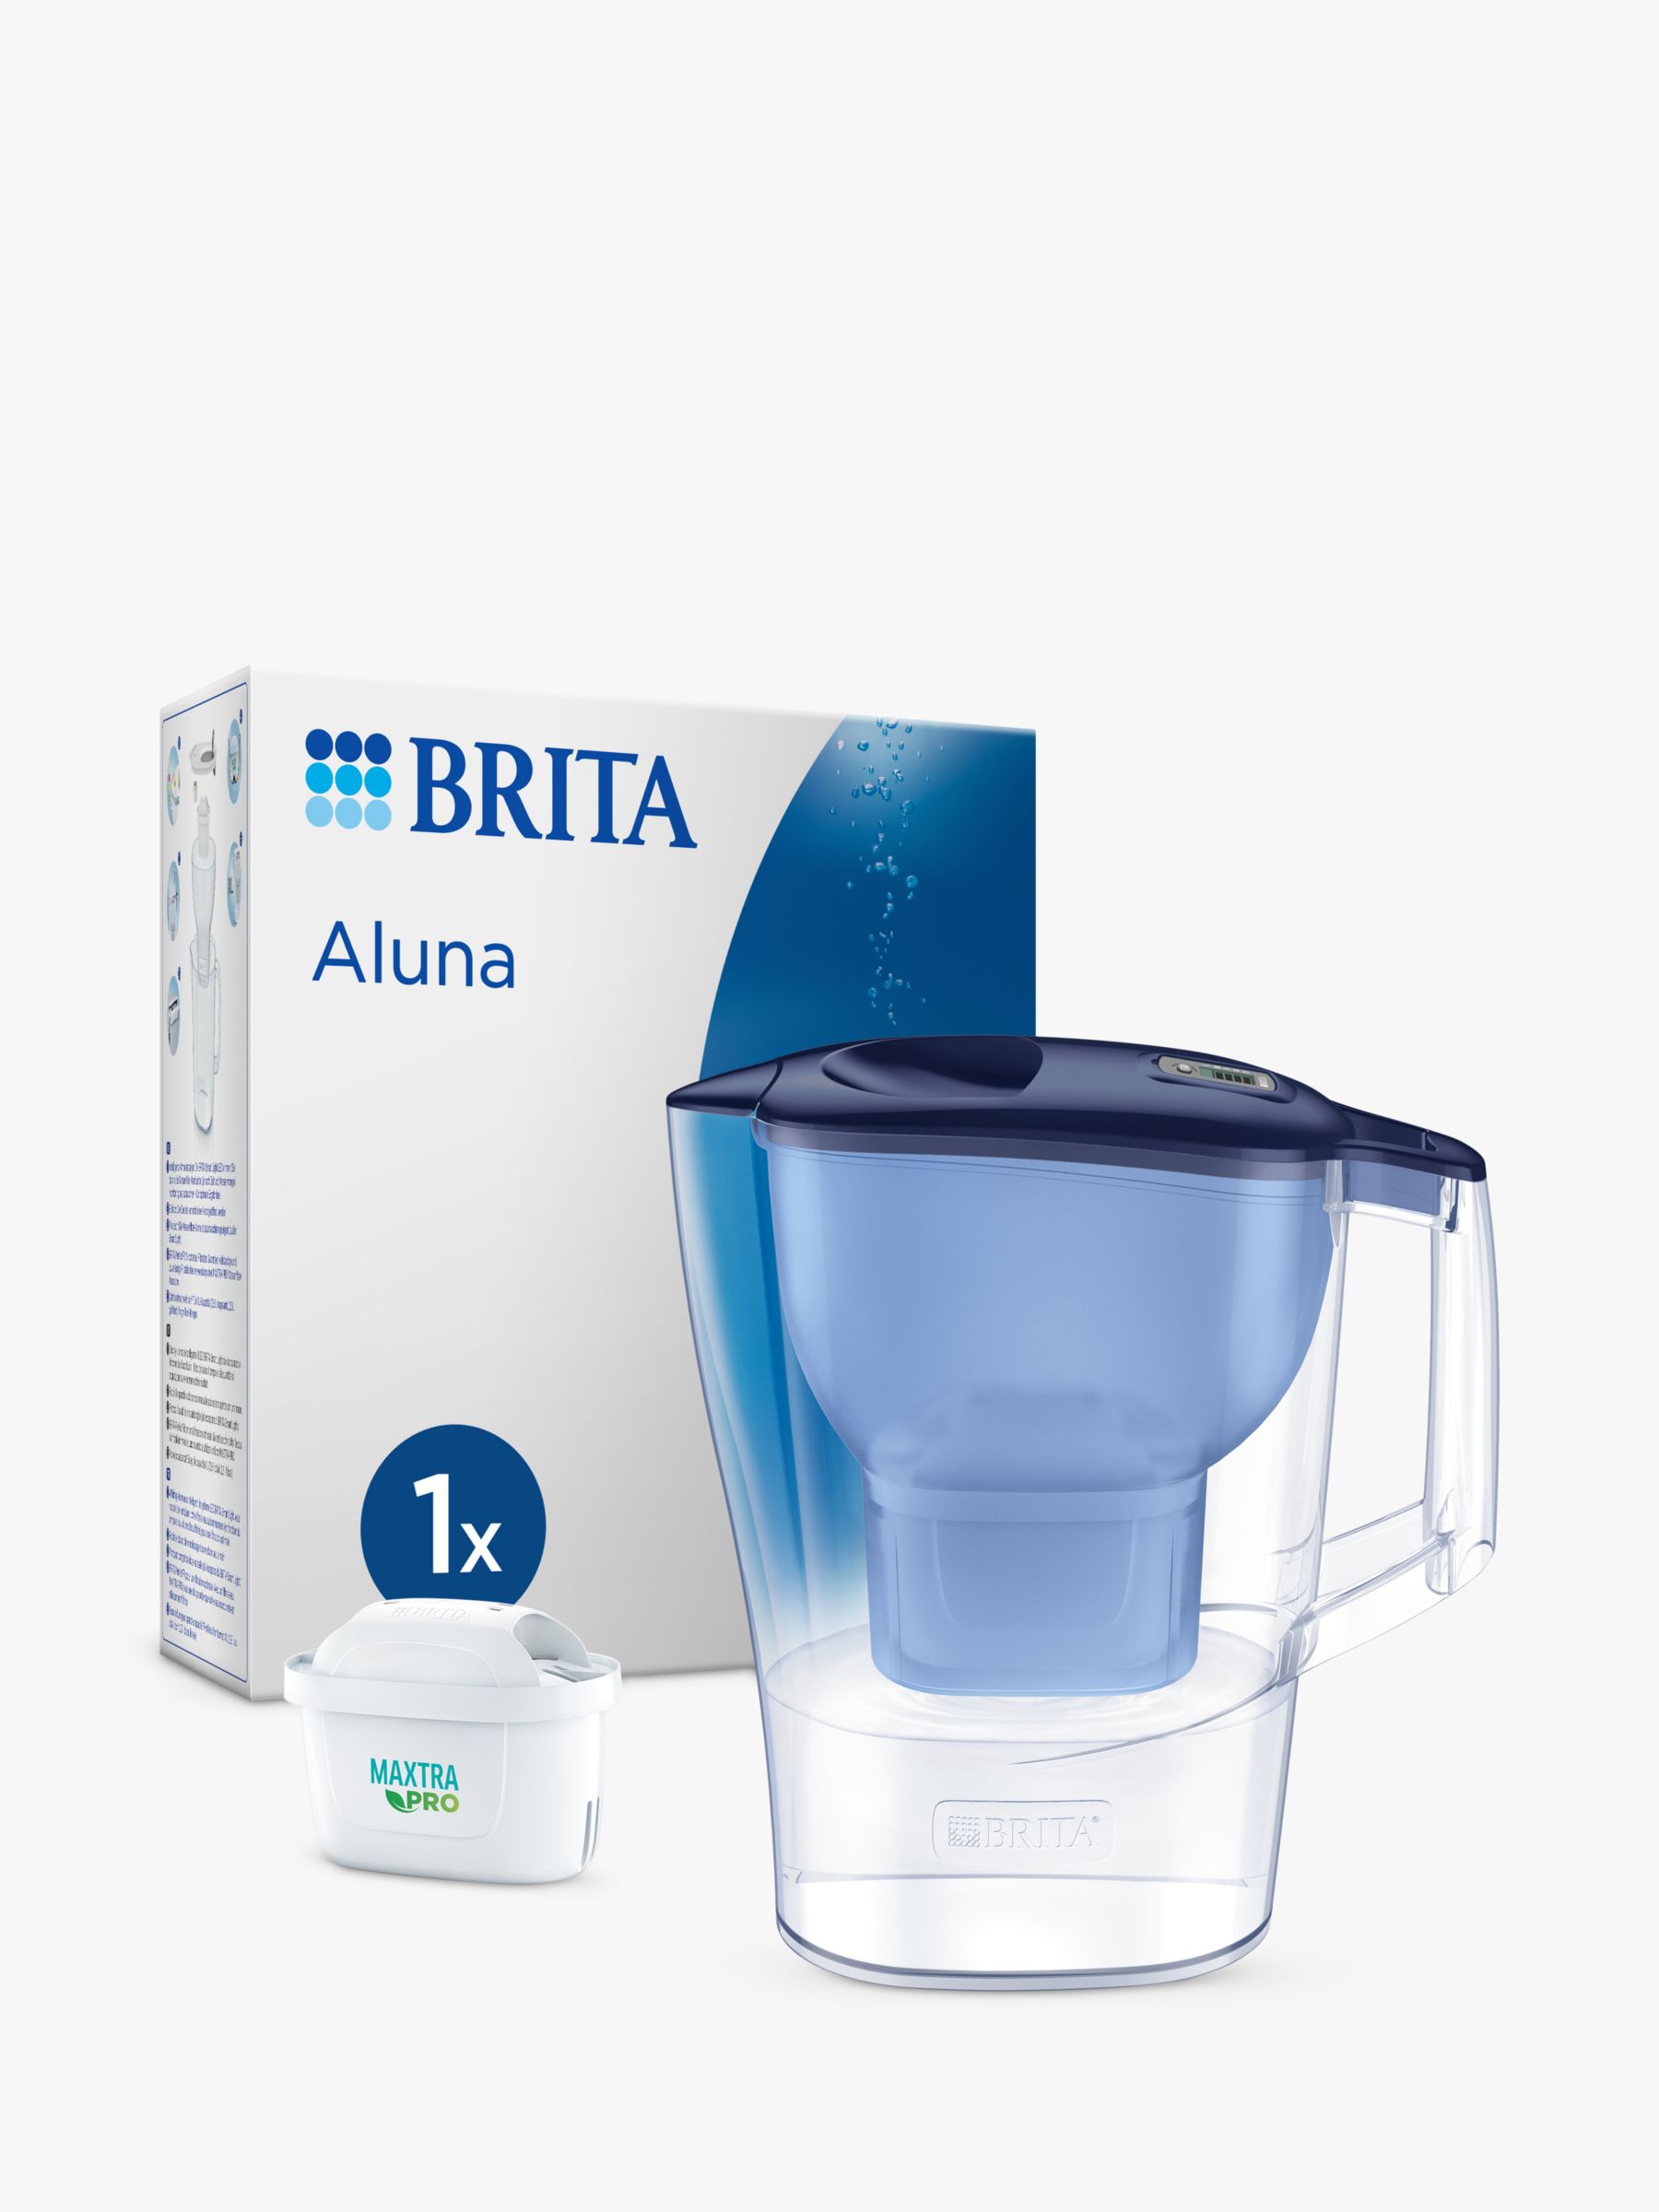 Jarra Brita Aluna + 1 filtro Maxtra PRO